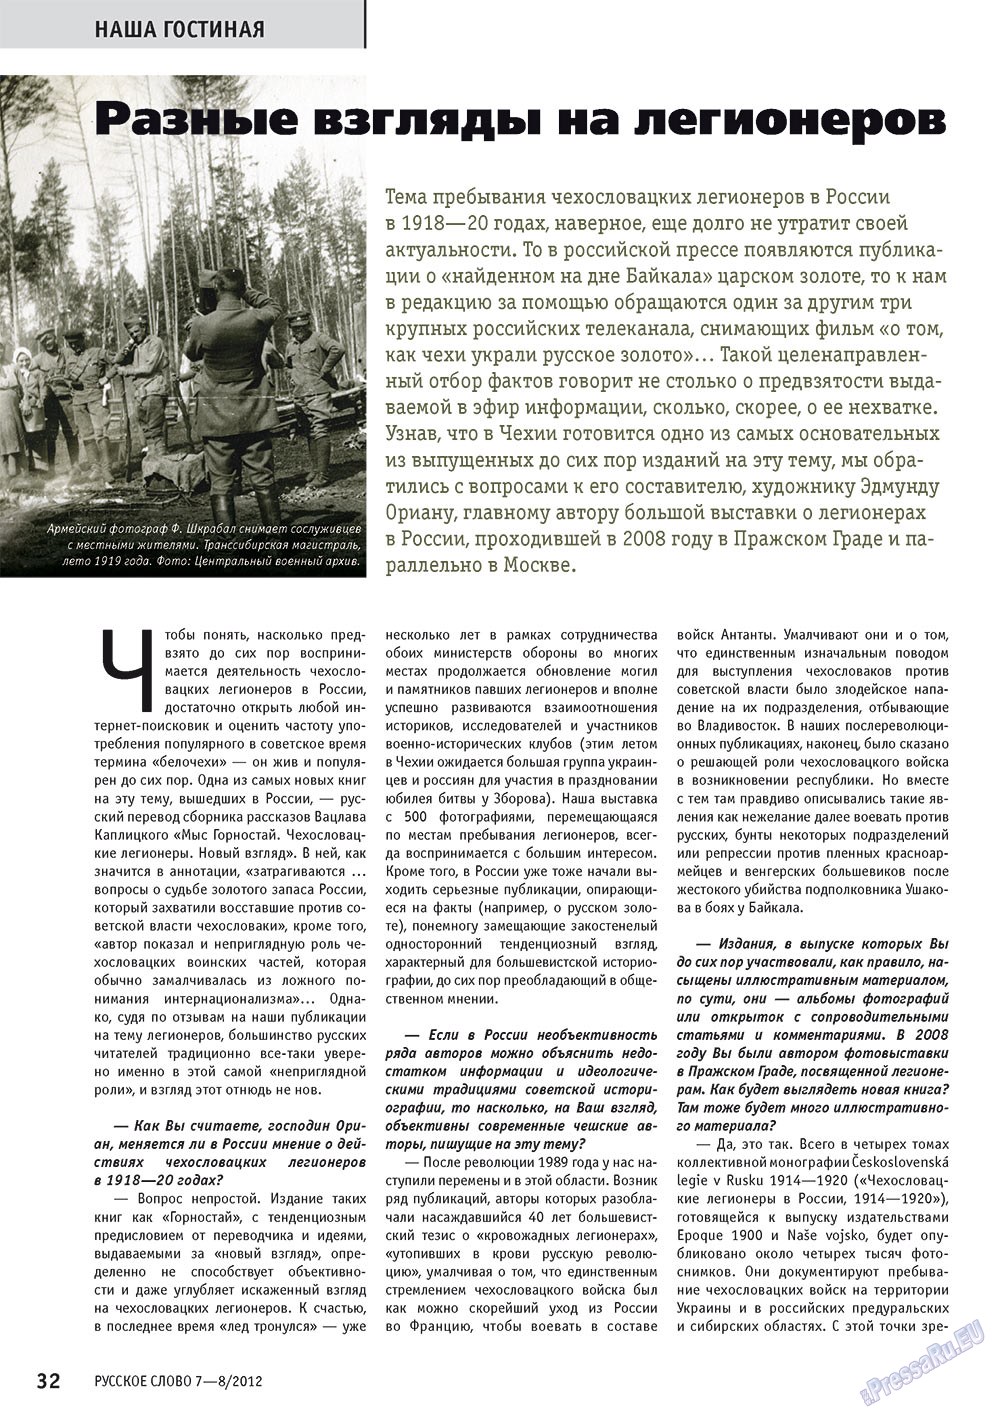 Русское слово, журнал. 2012 №7 стр.32